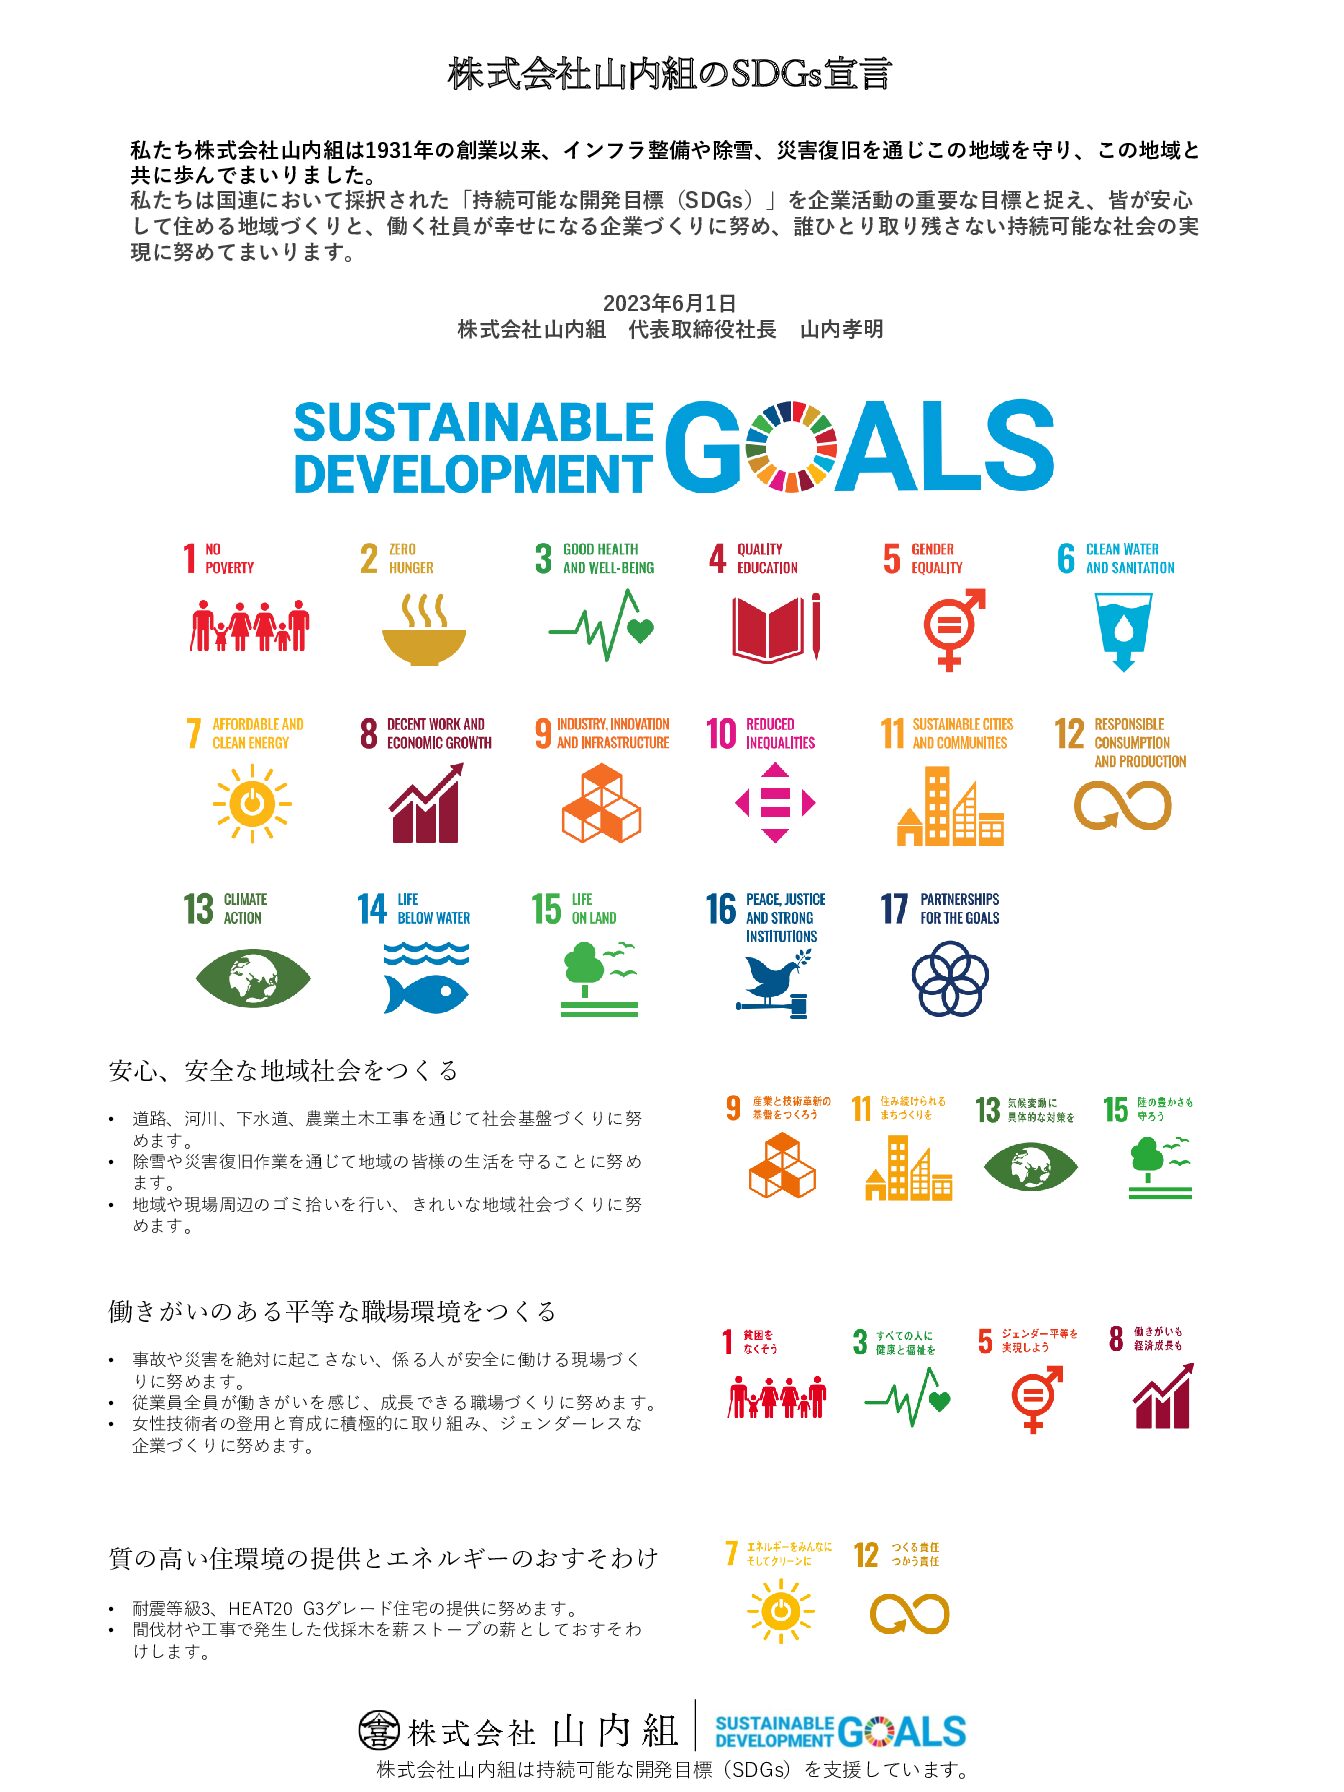 SDGs宣言を公表しました